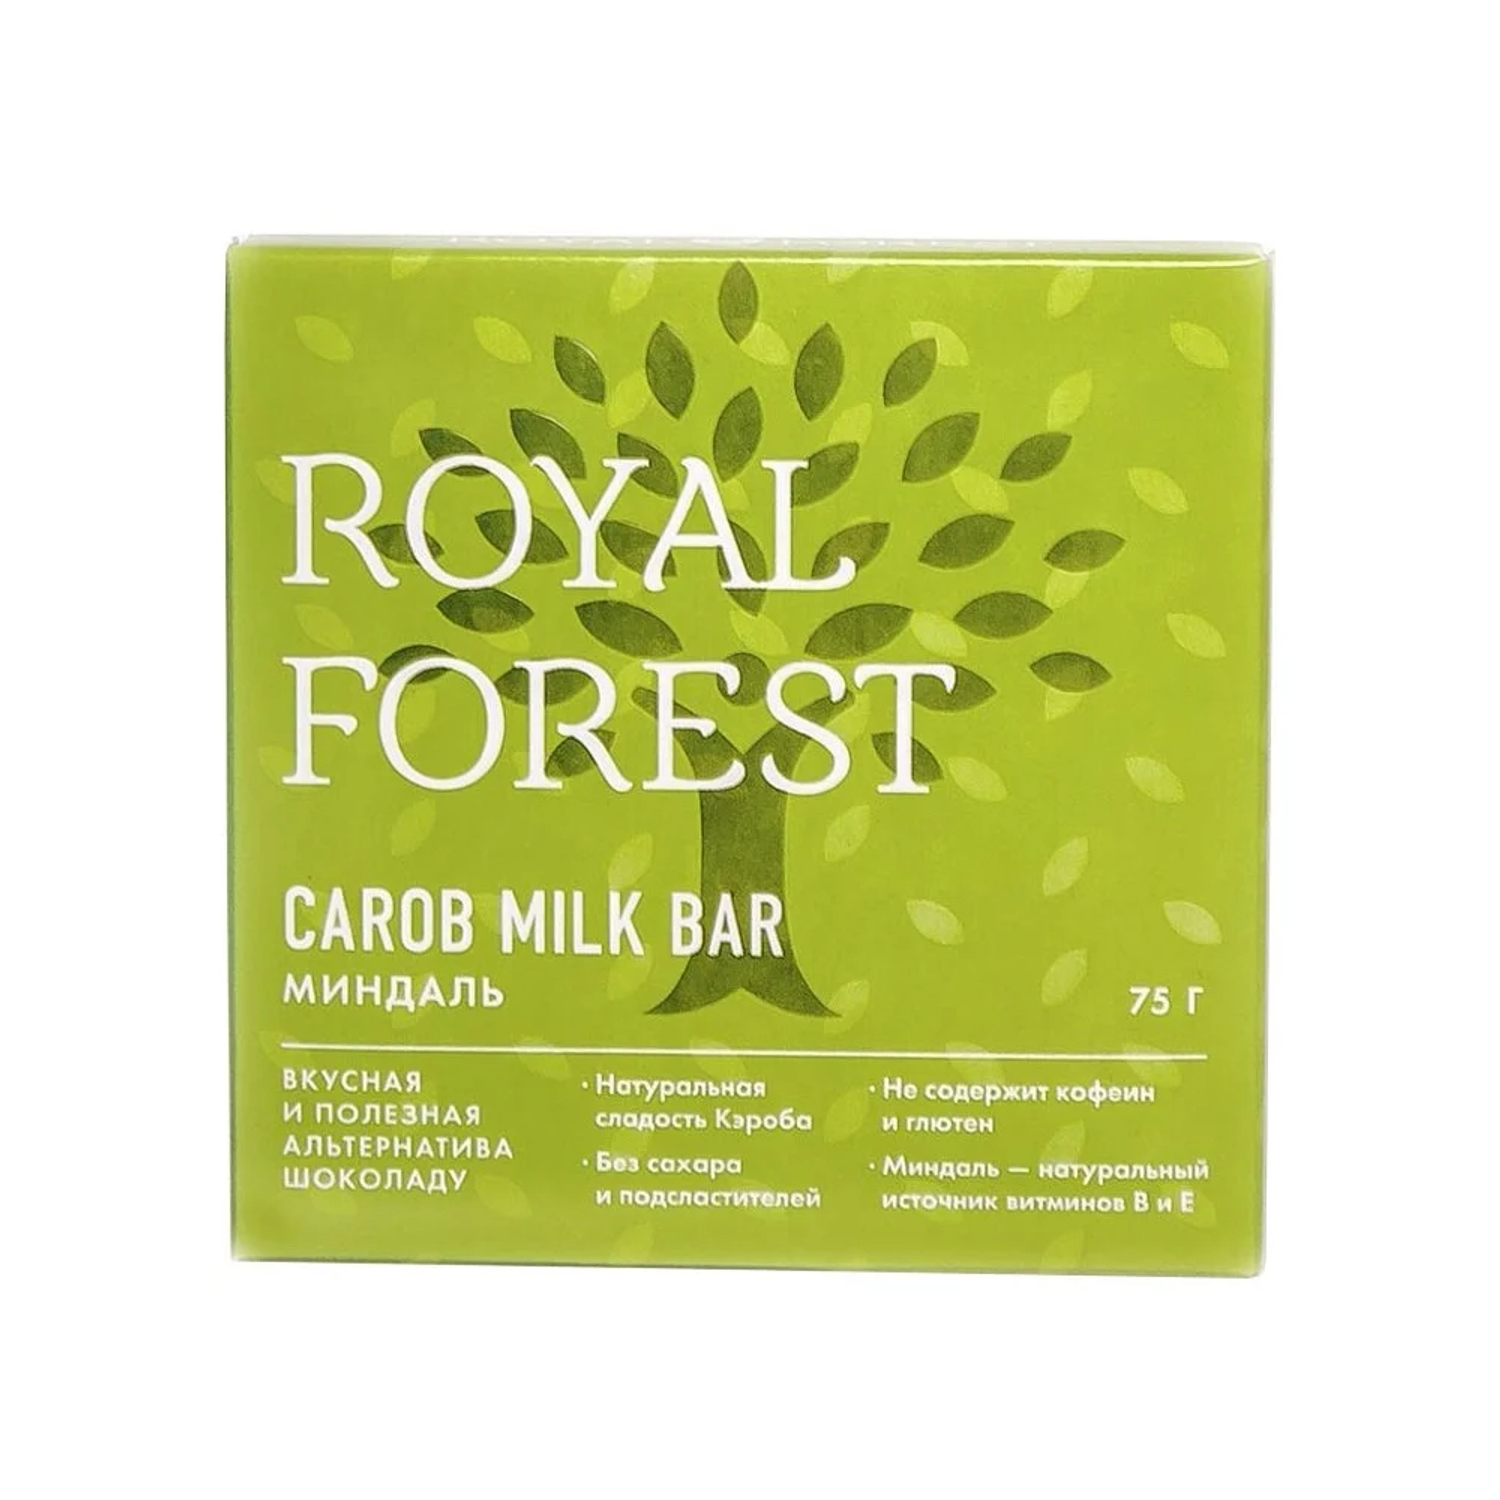 Плиточный шоколад ROYAL FOREST из кэроба молочный с миндалем 75 г - фото 1